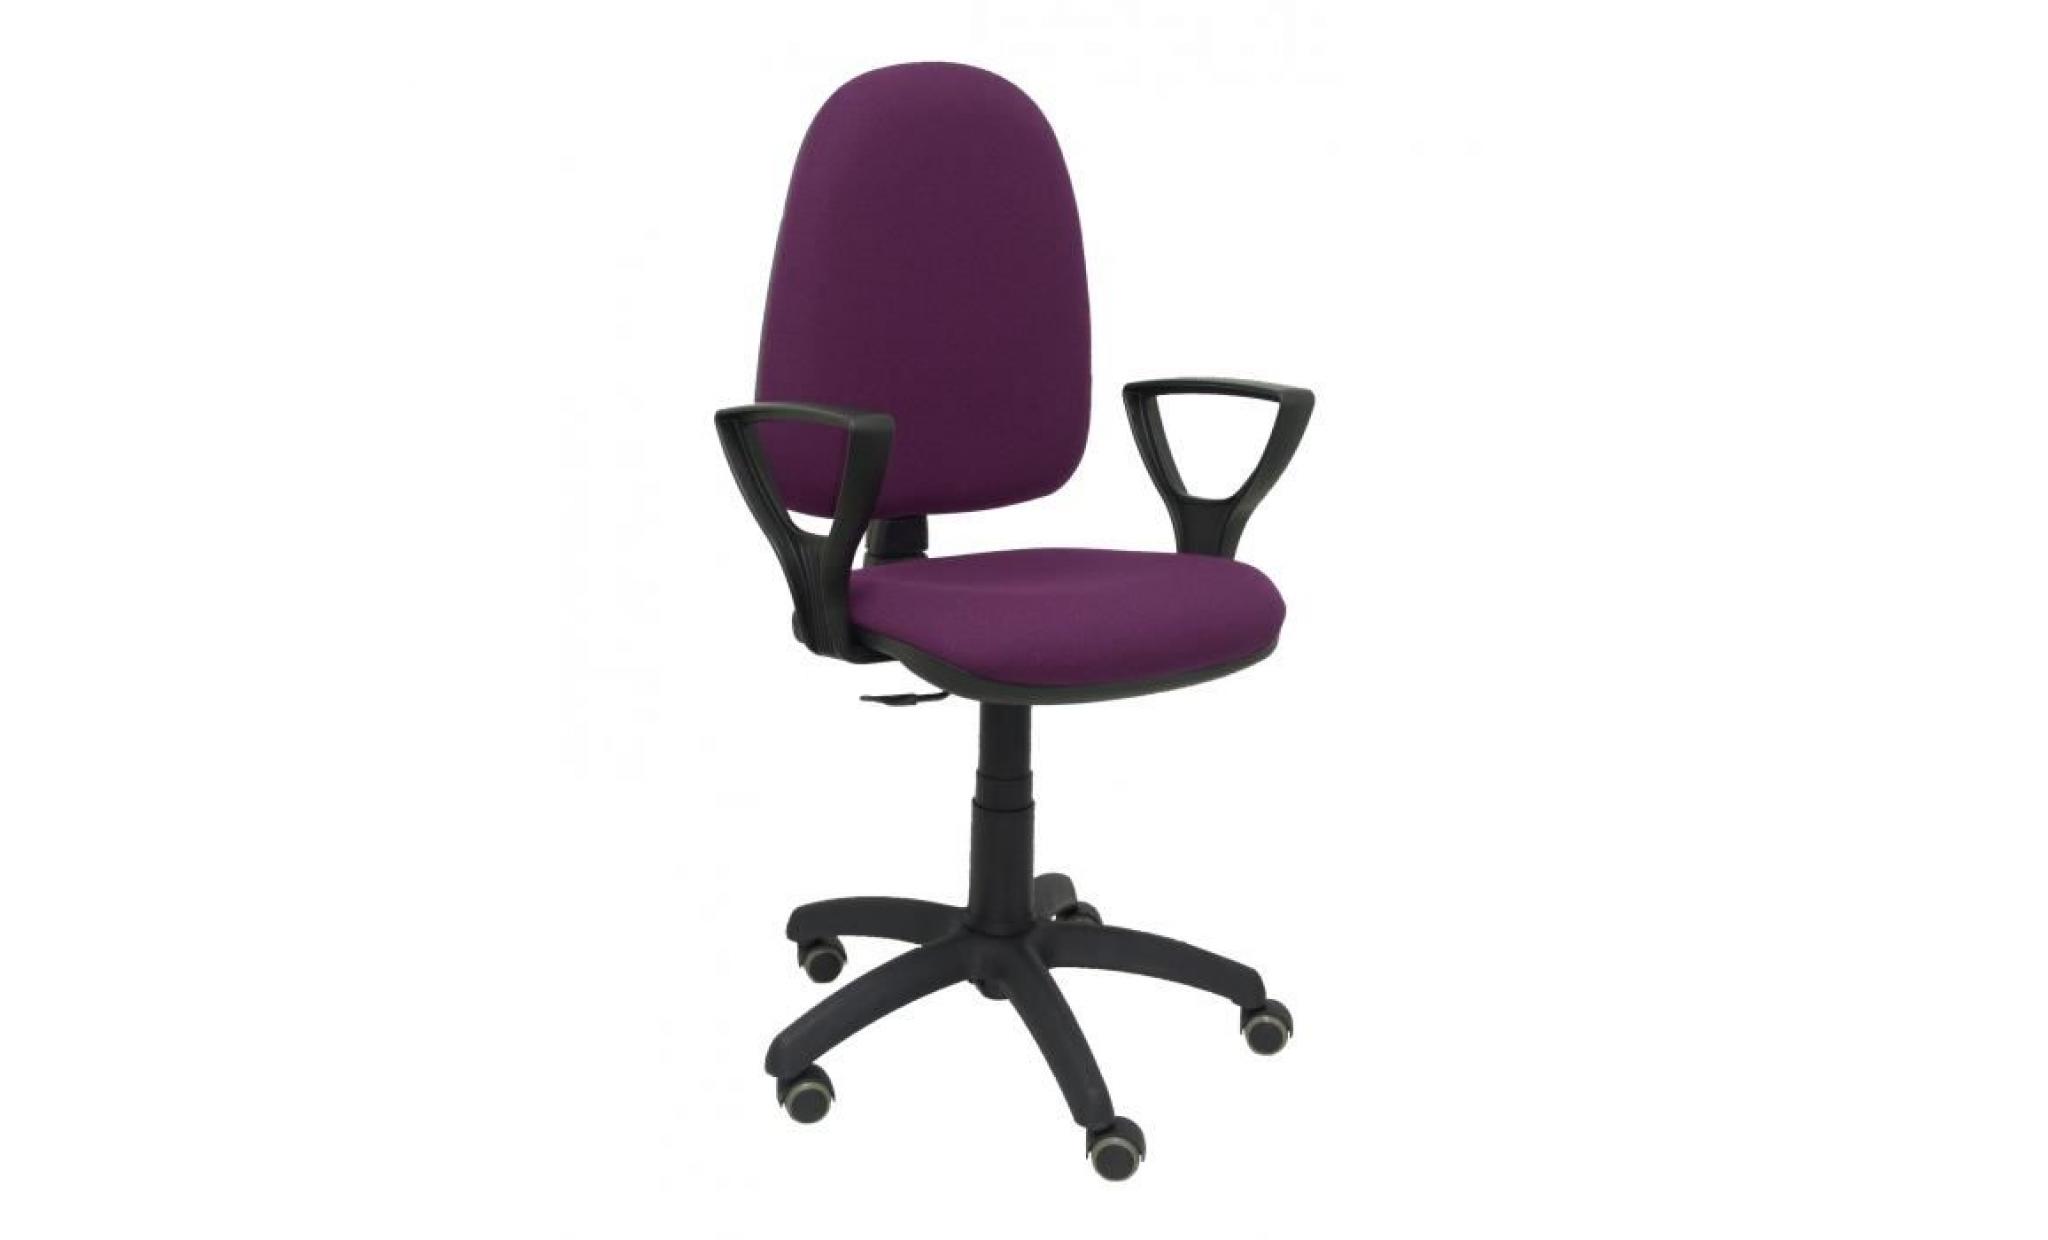 modèle 04cpbali760bgolfrp chaise de bureau ergonomique avec mécanisme de contact permanent, réglable en hauteur et roues de parquet